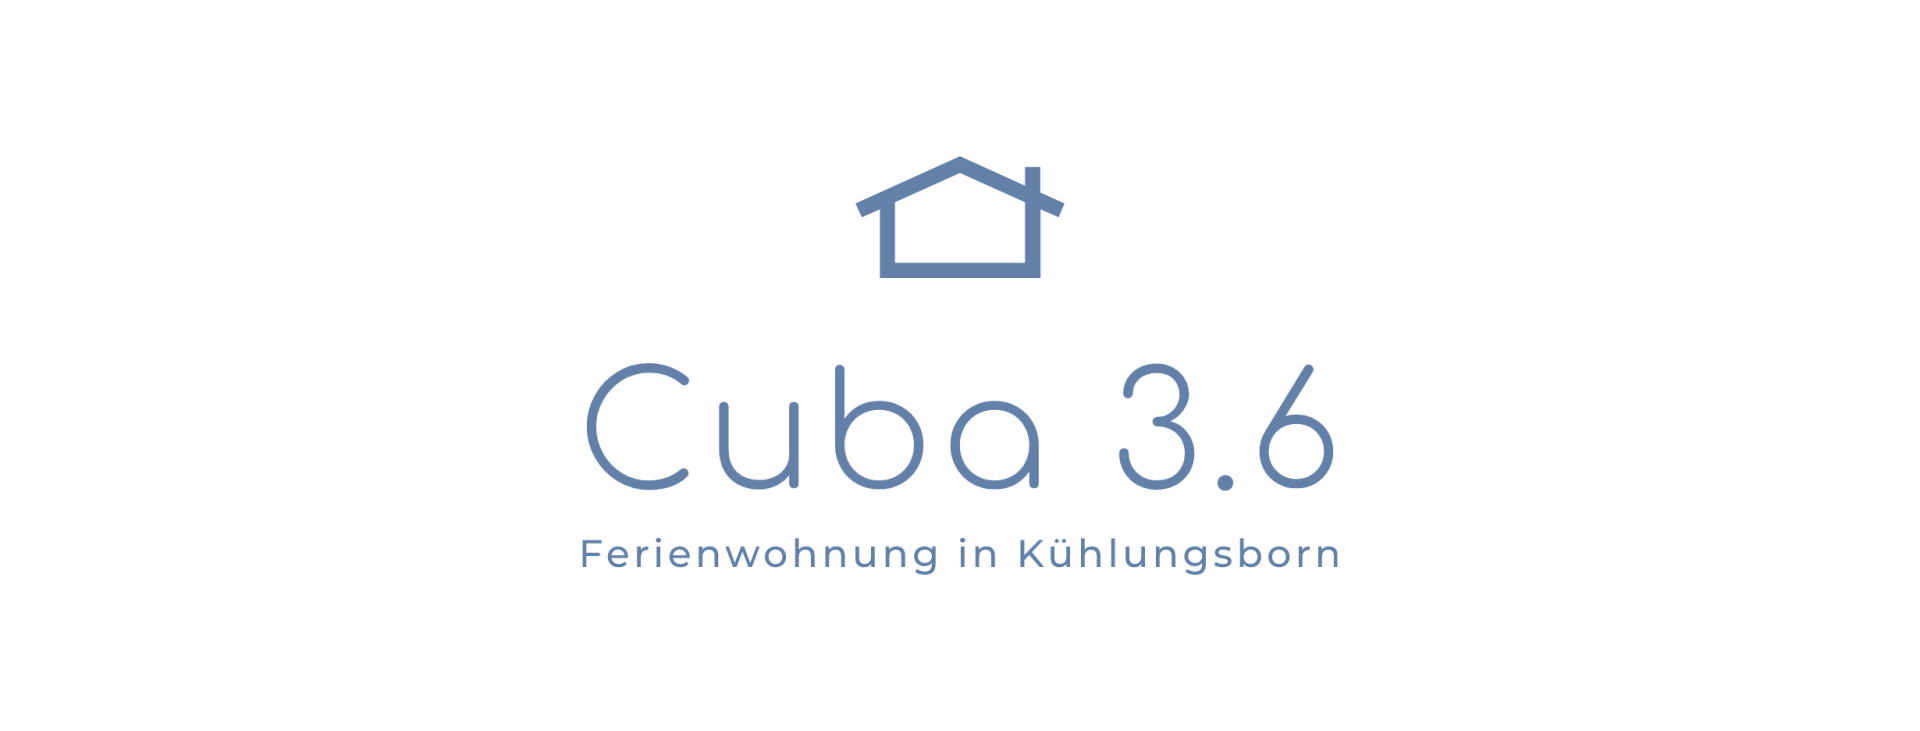 Cuba 3.6 - Ferienwohnung in Kühlungsborn